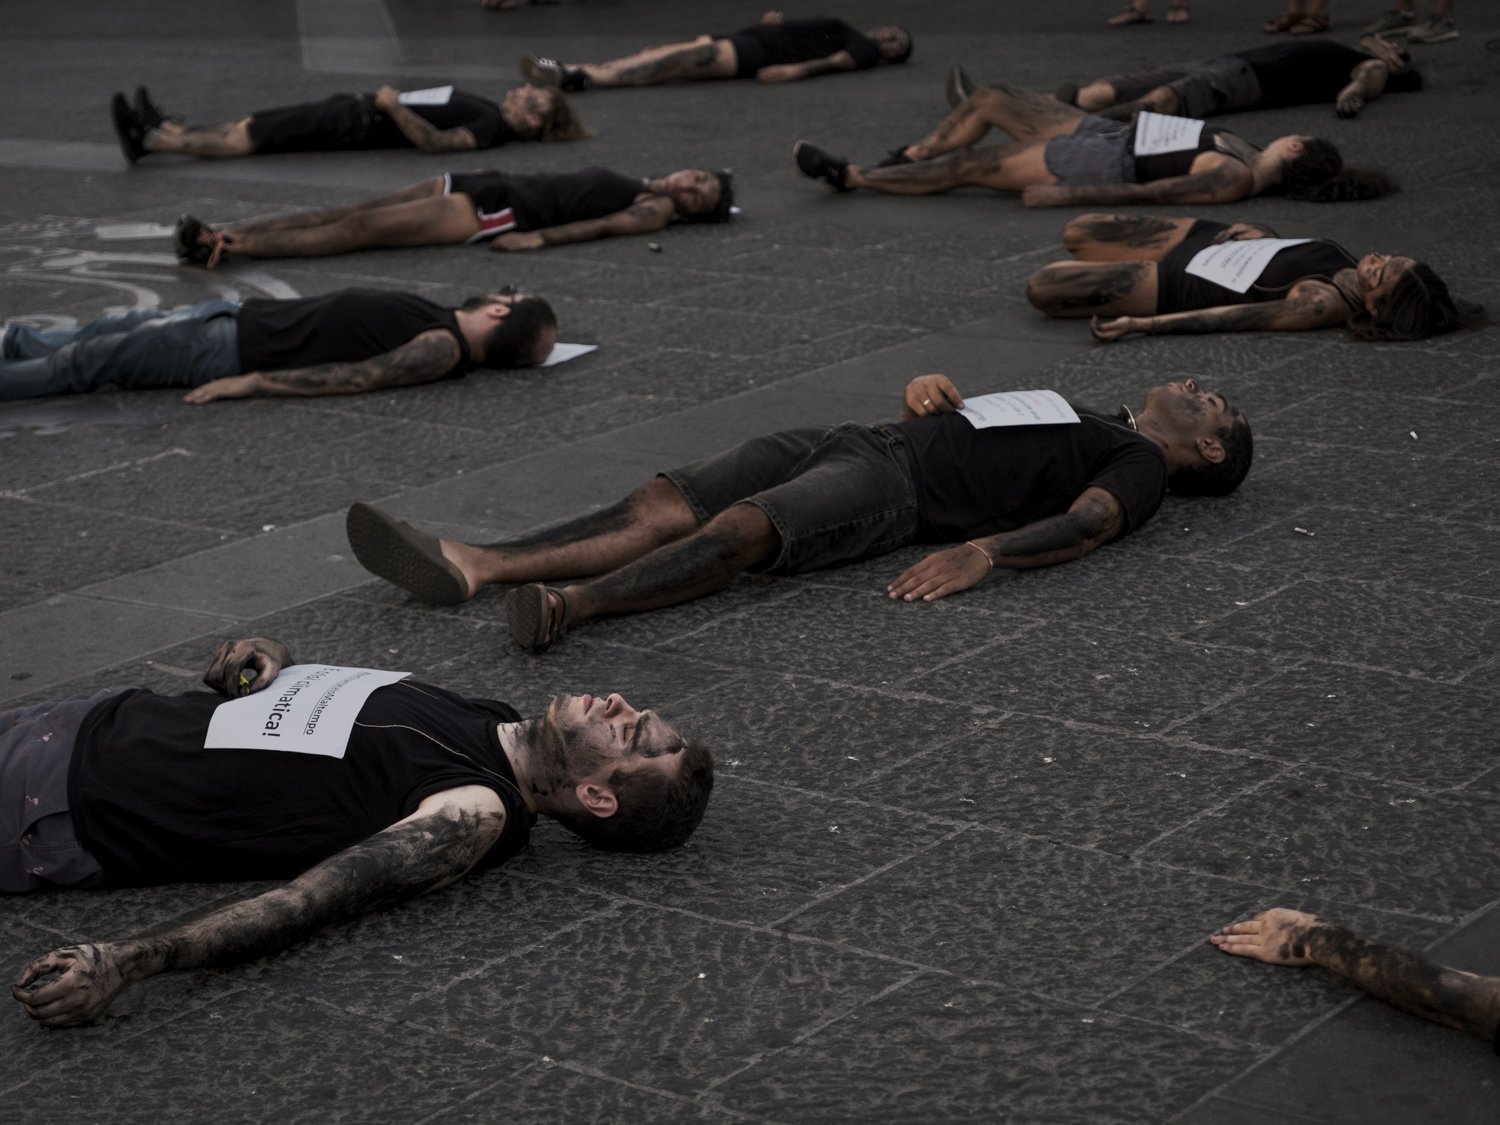  Attivisti di Fridays For Future durante un die-in: rappresentano le morti passate, presenti e futuredovute agli incendi e alla crisi climatica. 